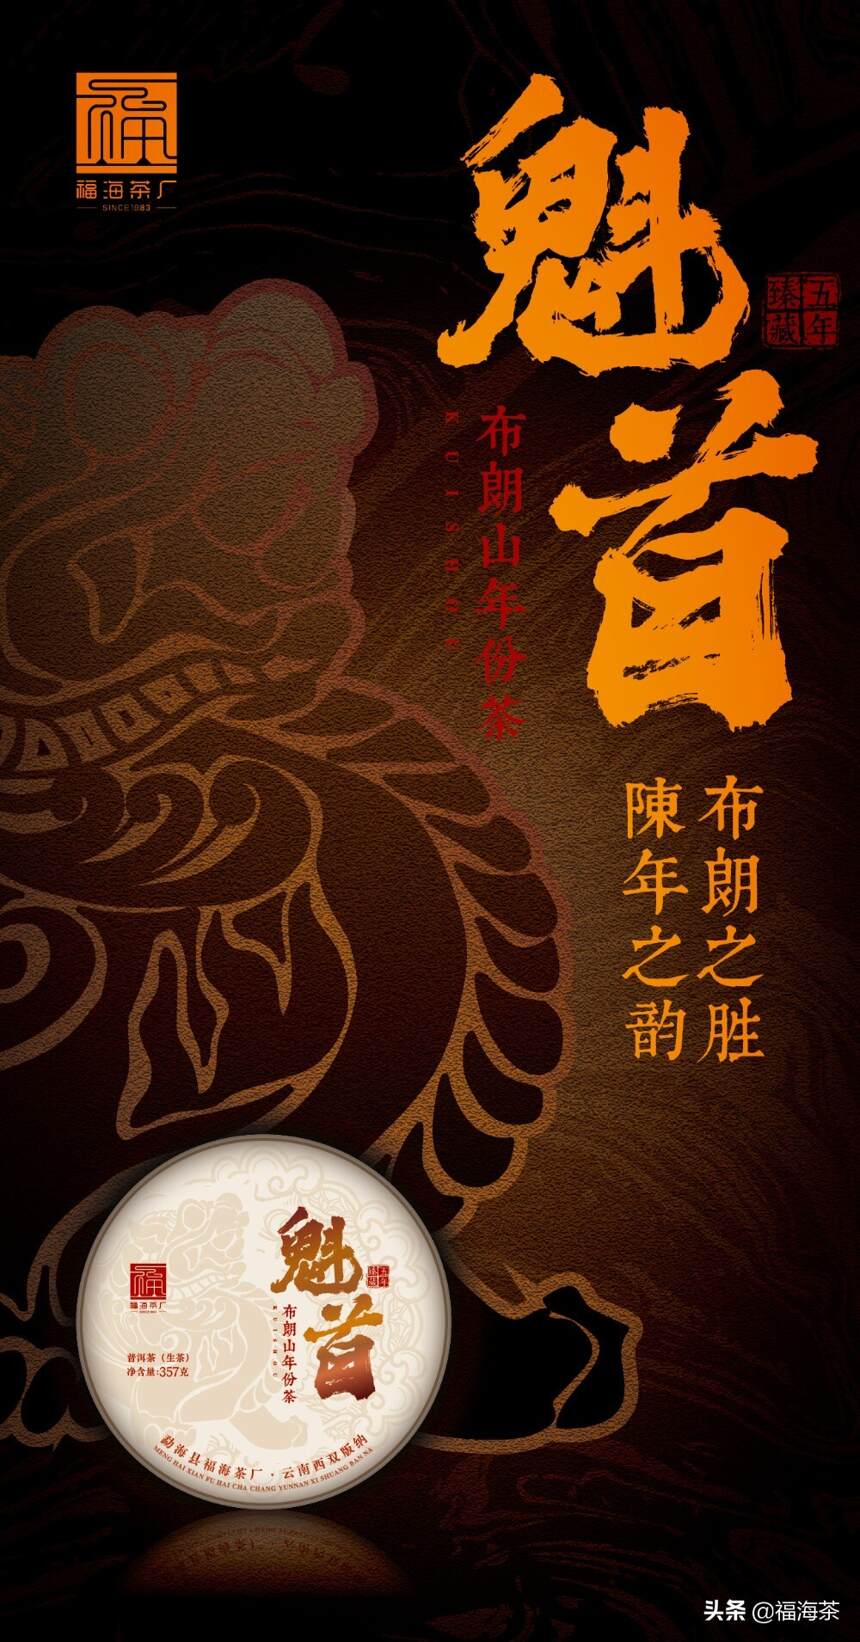 福海茶厂首款布朗山年份茶 | 布朗之胜 陈年之韵